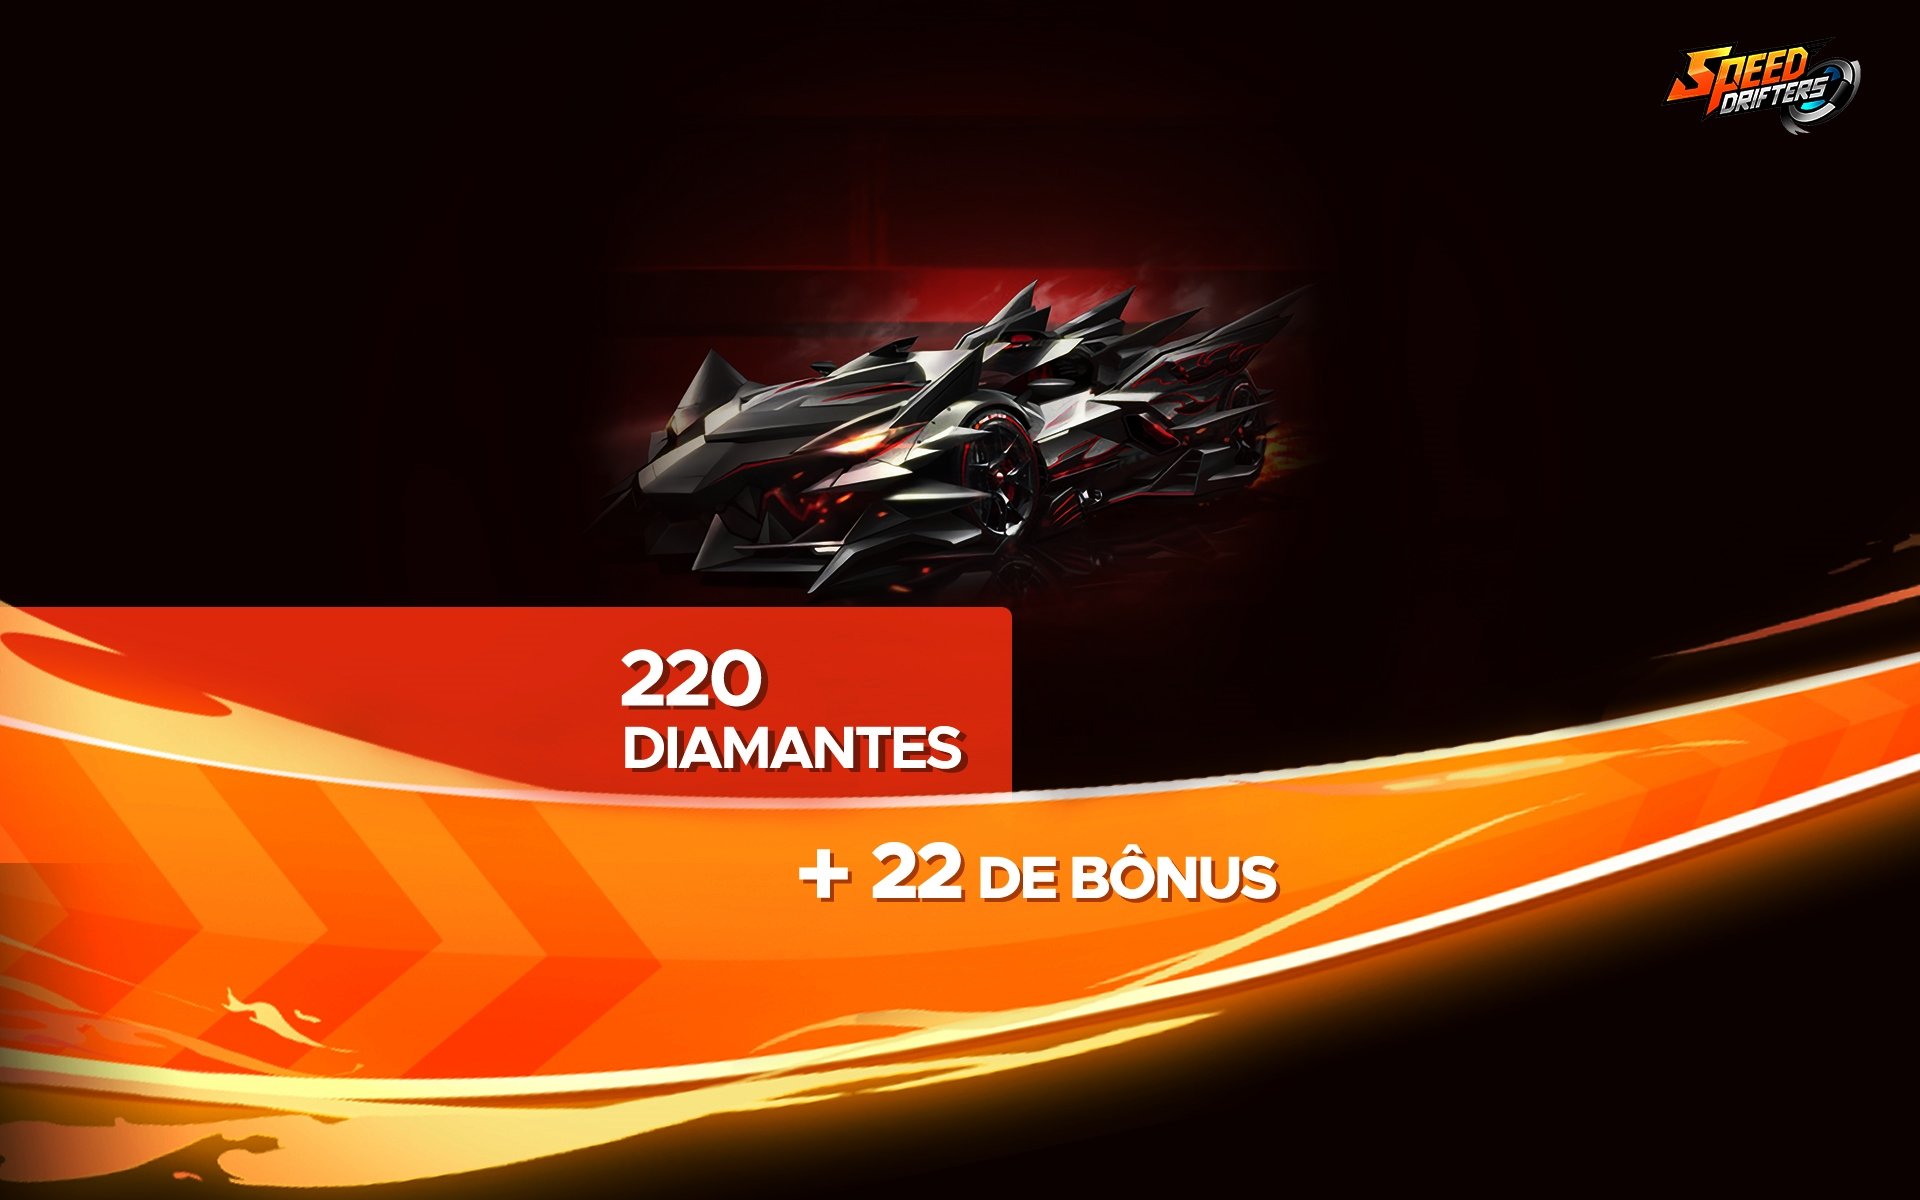 Speed Drifters - 220 Diamantes + 22 de Bônus cover